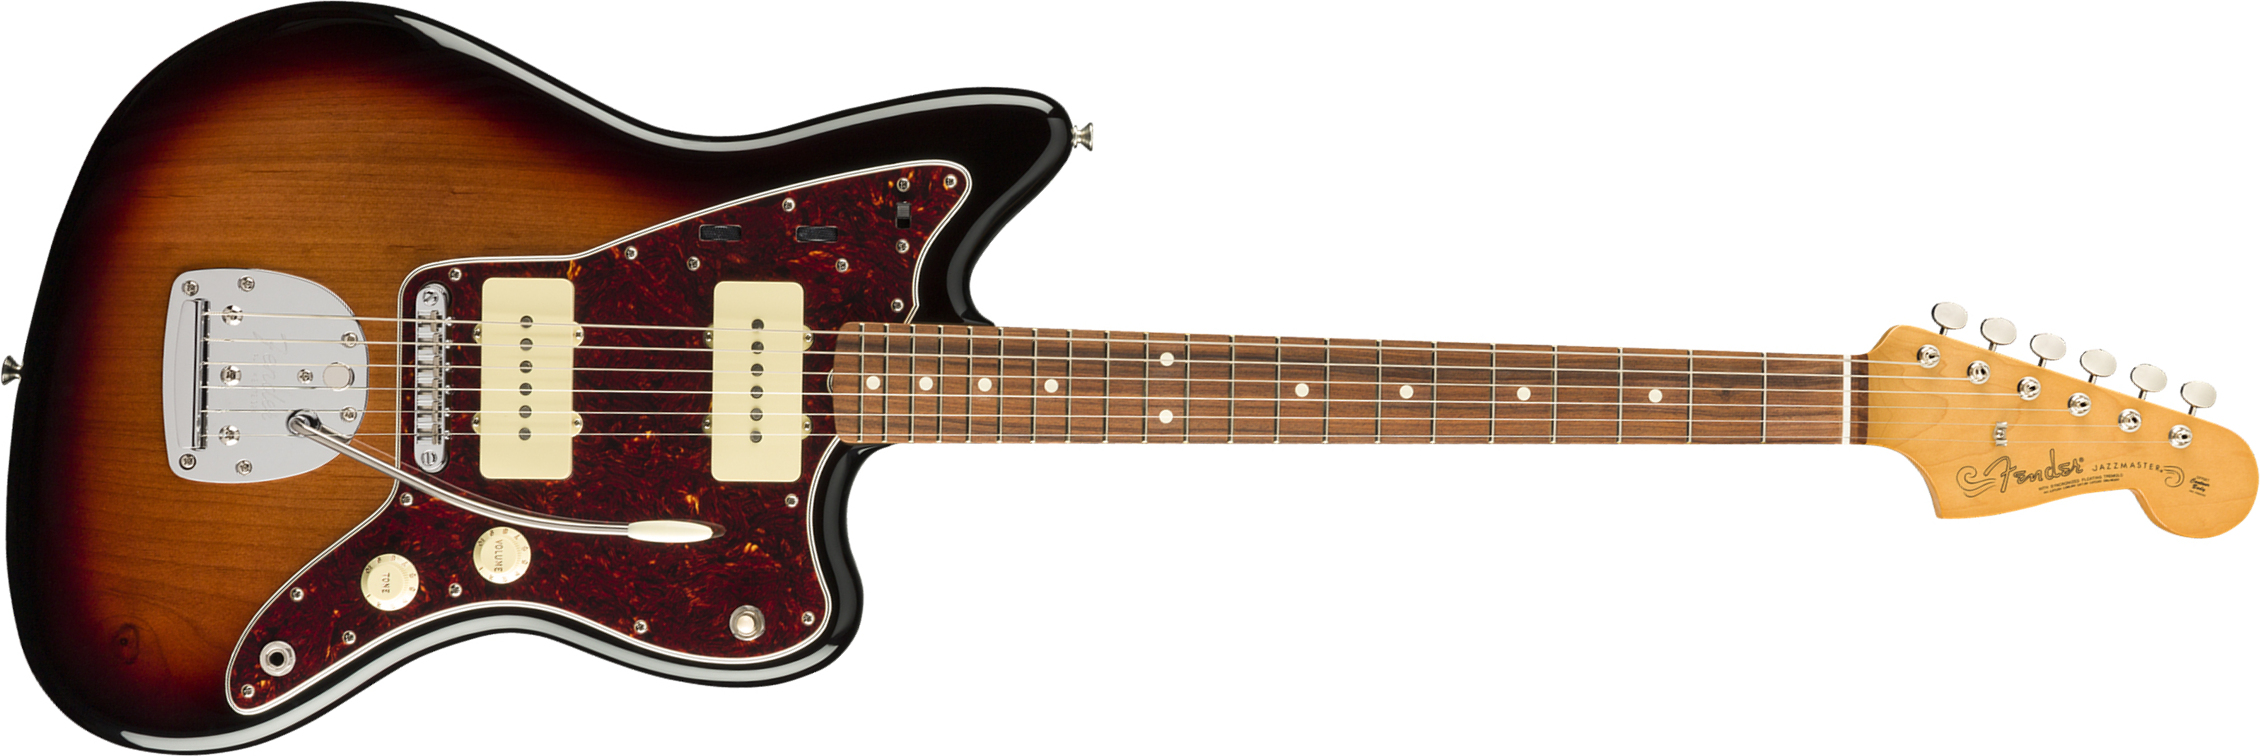 Fender Jazzmaster 60s Vintera Modified Mex Pf - 3-color Sunburst - Retro-Rock-E-Gitarre - Main picture